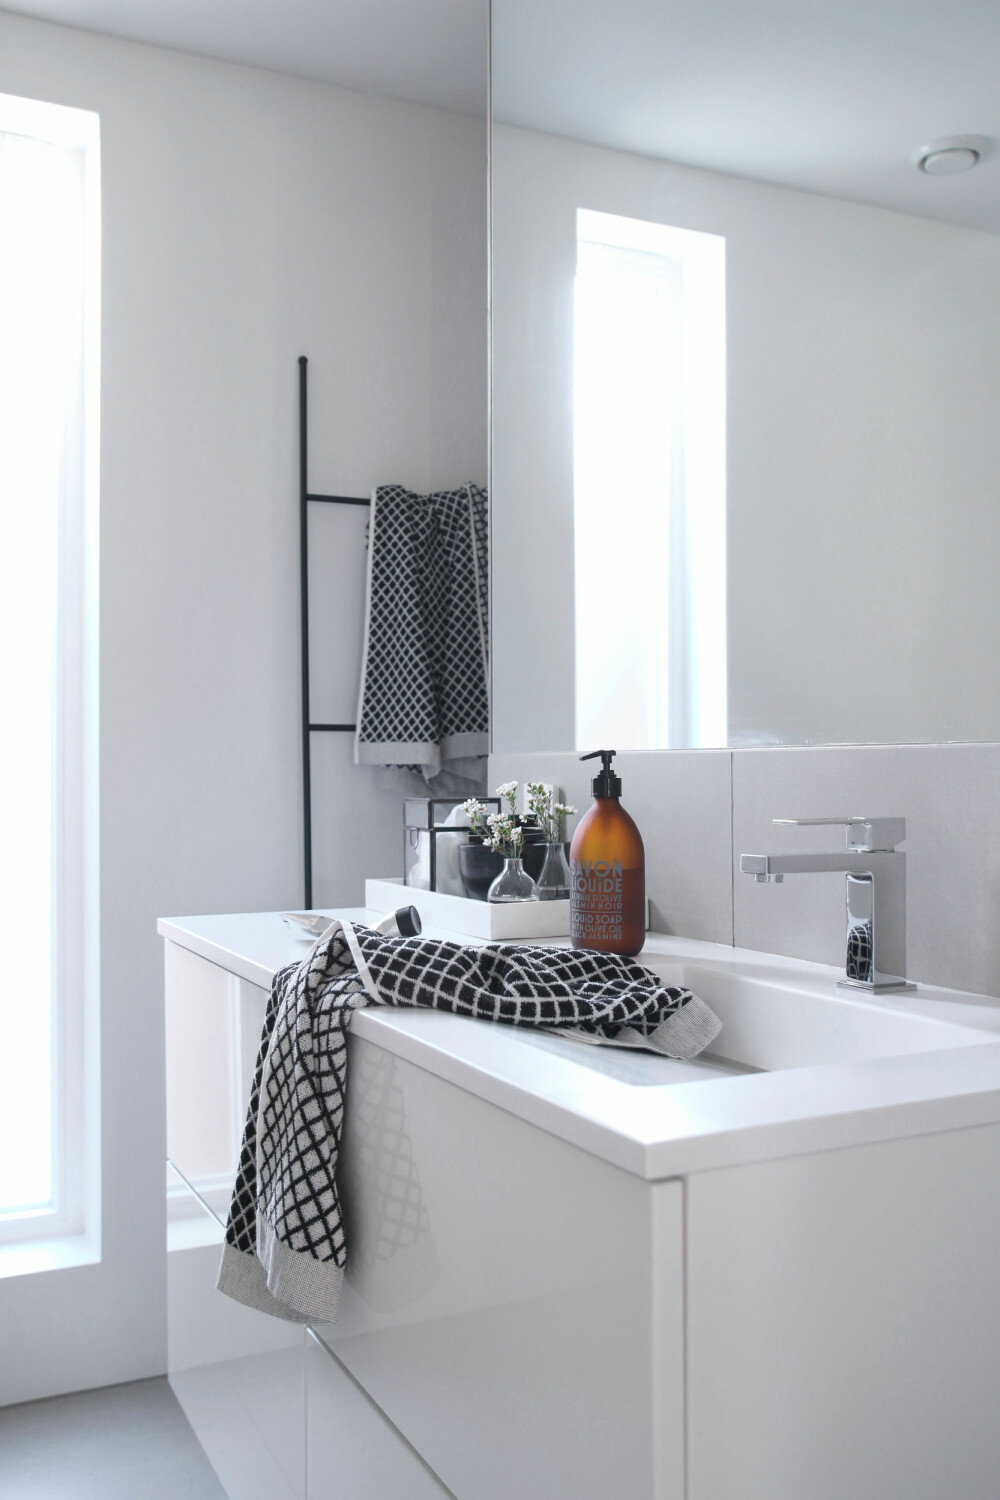 GODT KJØP: I likhet med resten av huset er badet minimalistisk og stilrent. Vasken, som Therese og mannen tegnet selv, er et av interiørdesignerens beste kjøp.